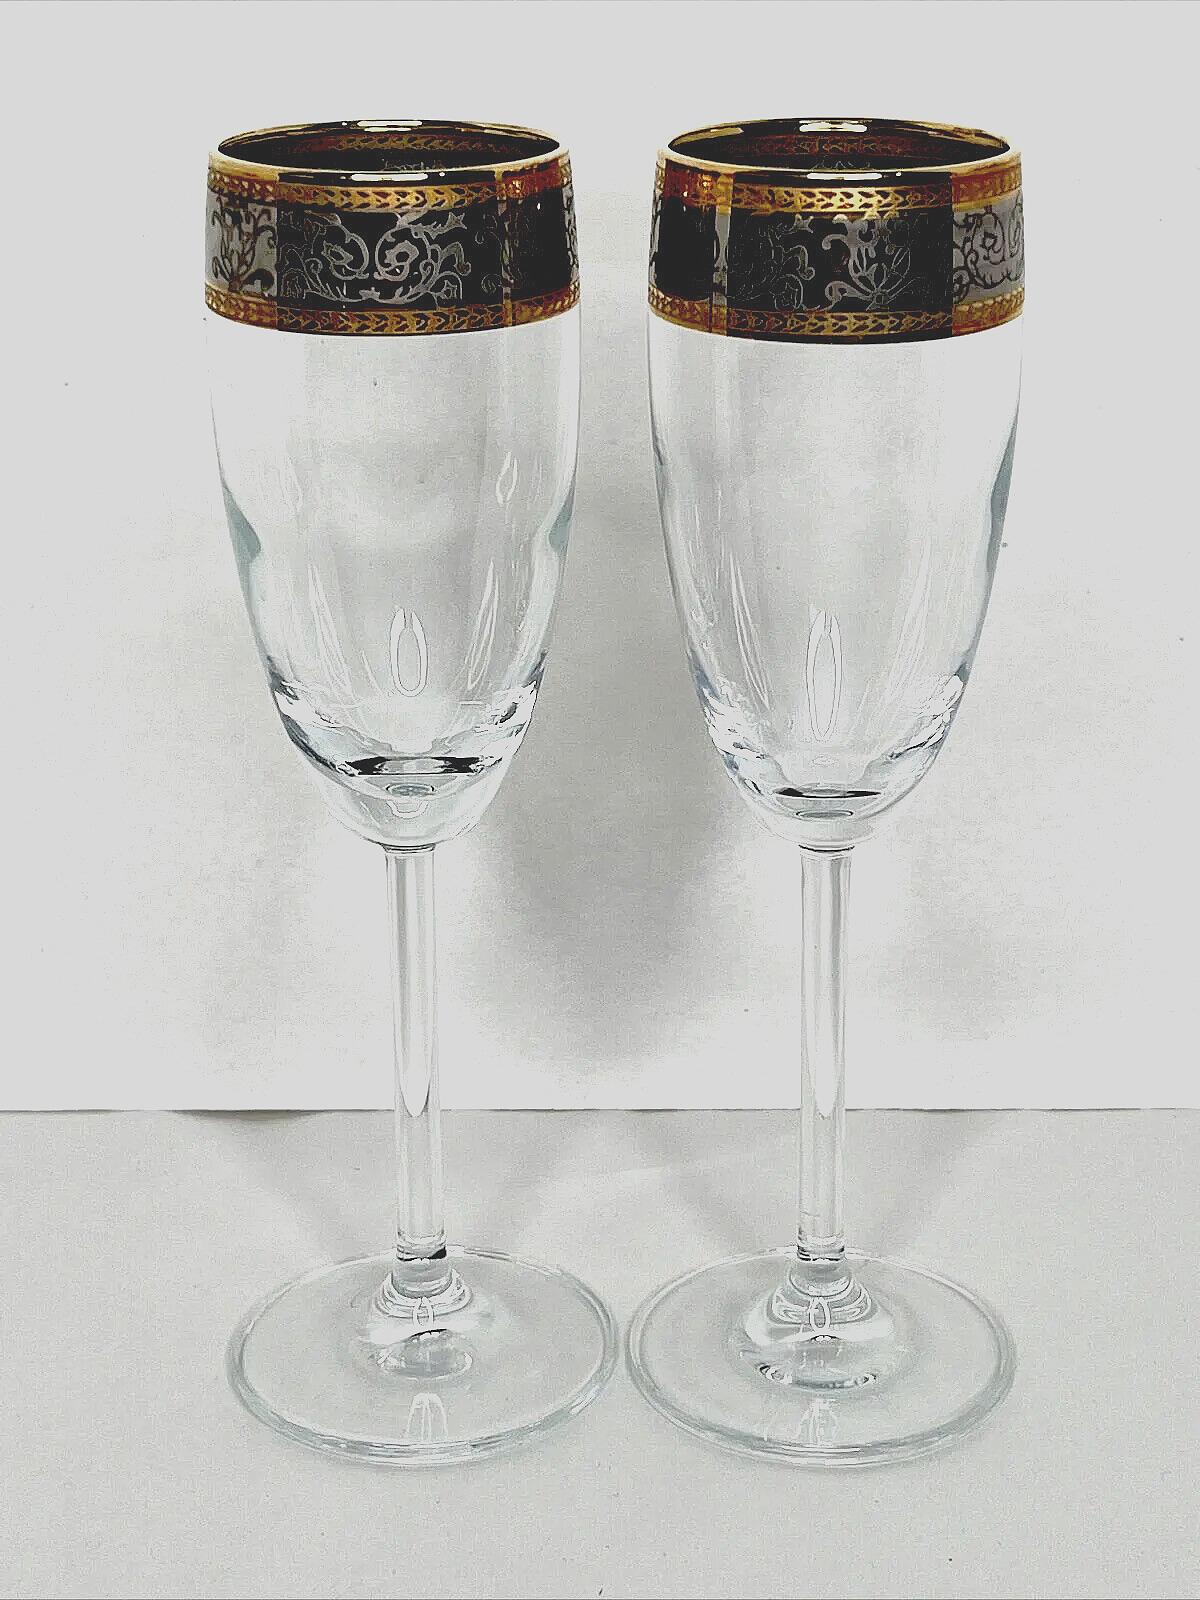 Baroque 24k Gold & Platinum Crystal Stemware Fluted Champagne Glass Set of 2